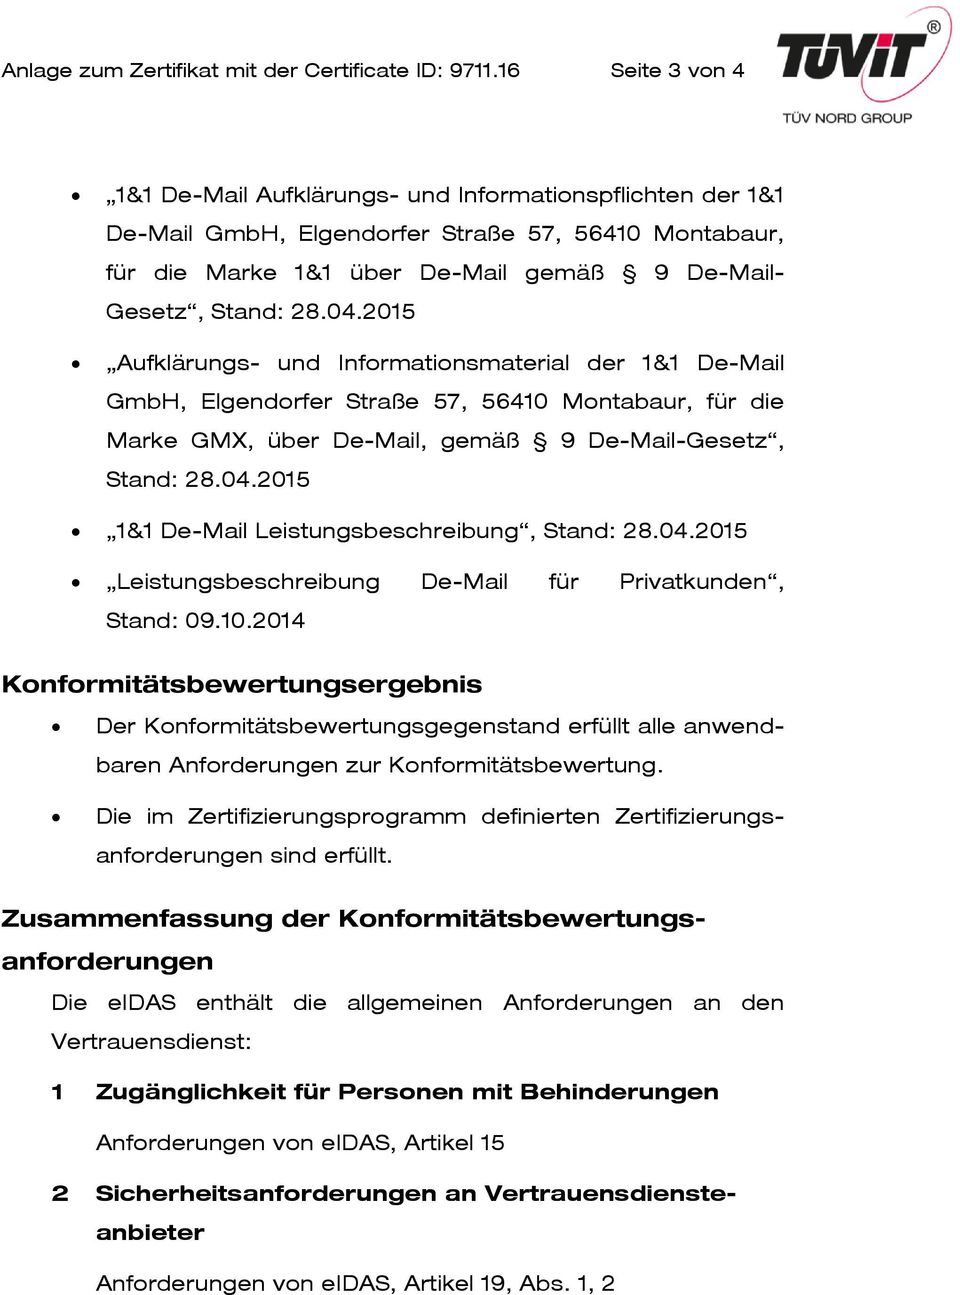 2015 Aufklärungs- und Informationsmaterial der 1&1 De-Mail GmbH, Elgendorfer Straße 57, 56410 Montabaur, für die Marke GMX, über De-Mail, gemäß 9 De-Mail-Gesetz, Stand: 28.04.